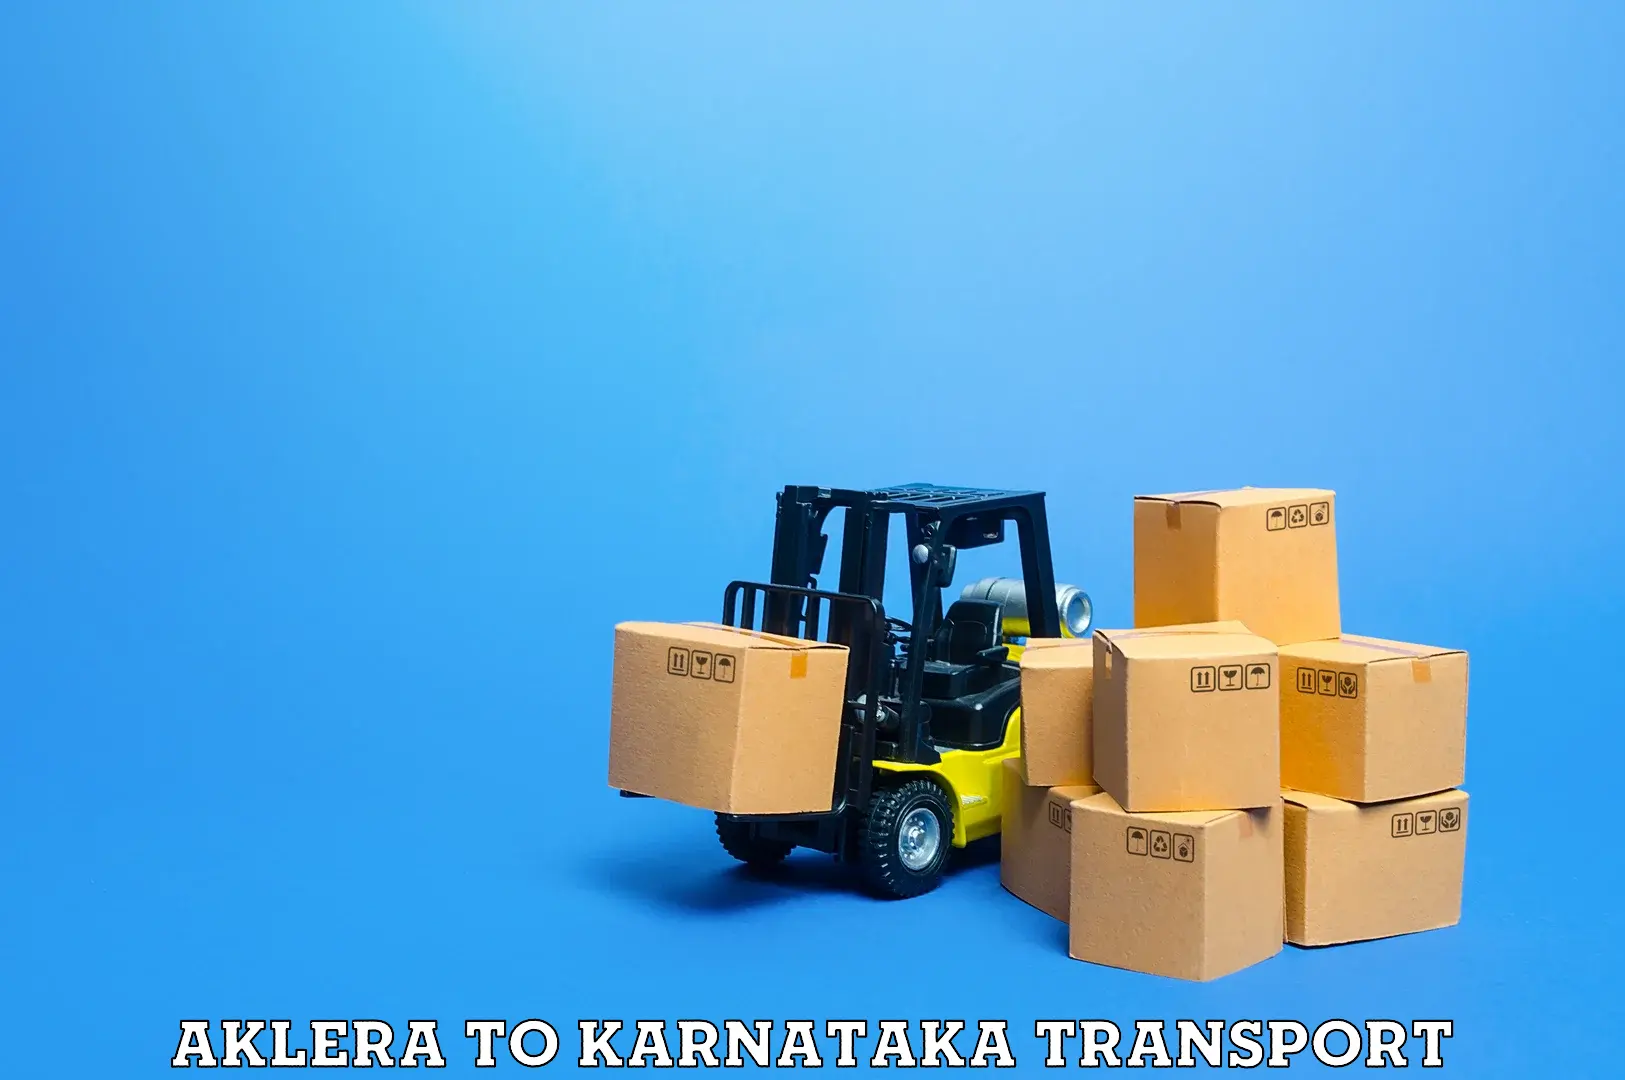 Transport in sharing Aklera to Karnataka